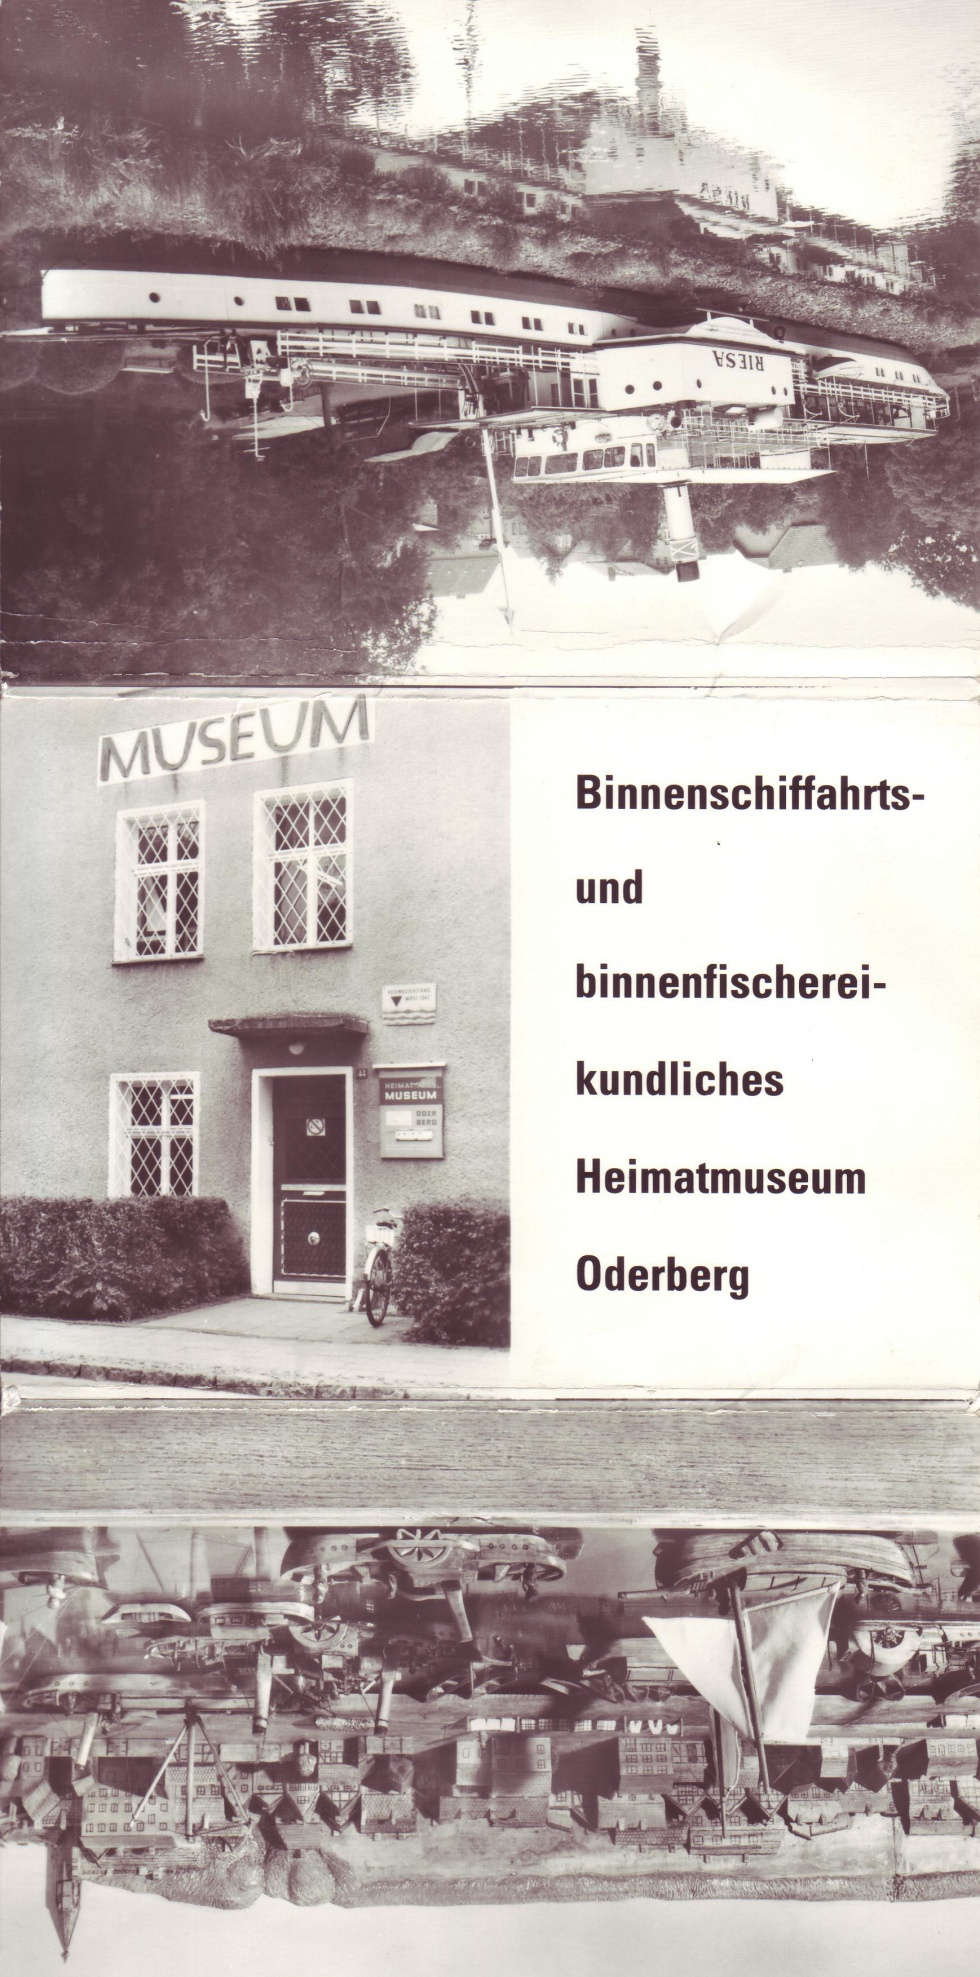 Postkarte Oderberg, Dreiteilige Klappkarte Binnenschifffahrts und binnenfischereikundliches Museum Oderberg, 1985 (Binnenschifffahrtsmuseum Oderberg CC BY-NC-SA)